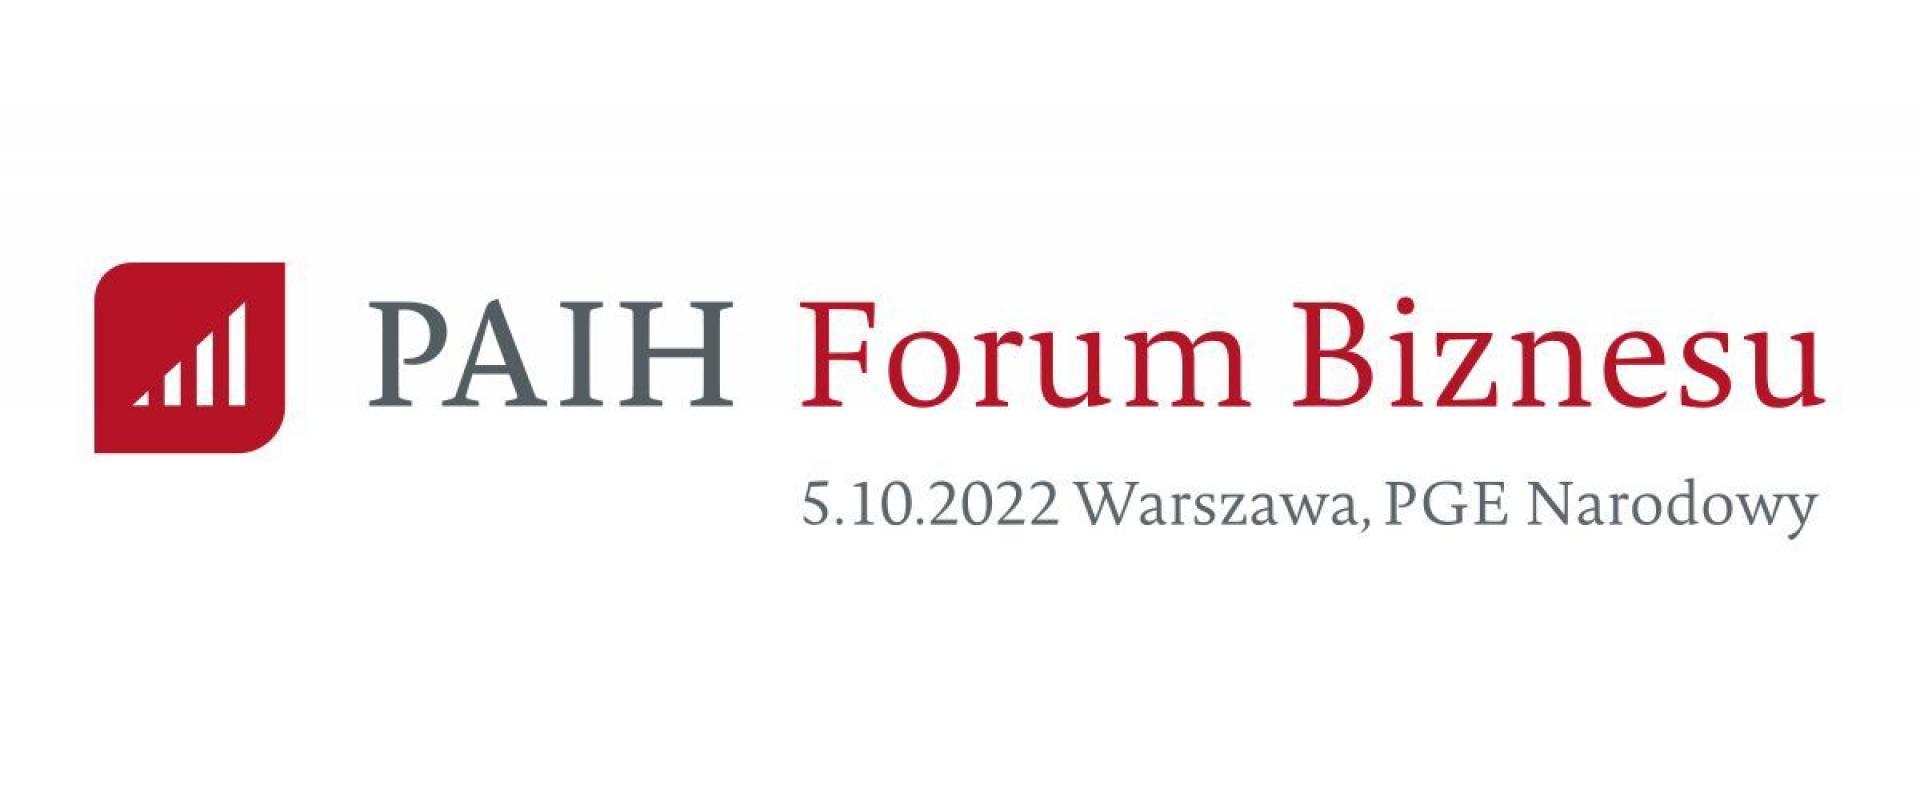 PAIH Forum Biznesu na Narodowym - eksport w centrum uwagi